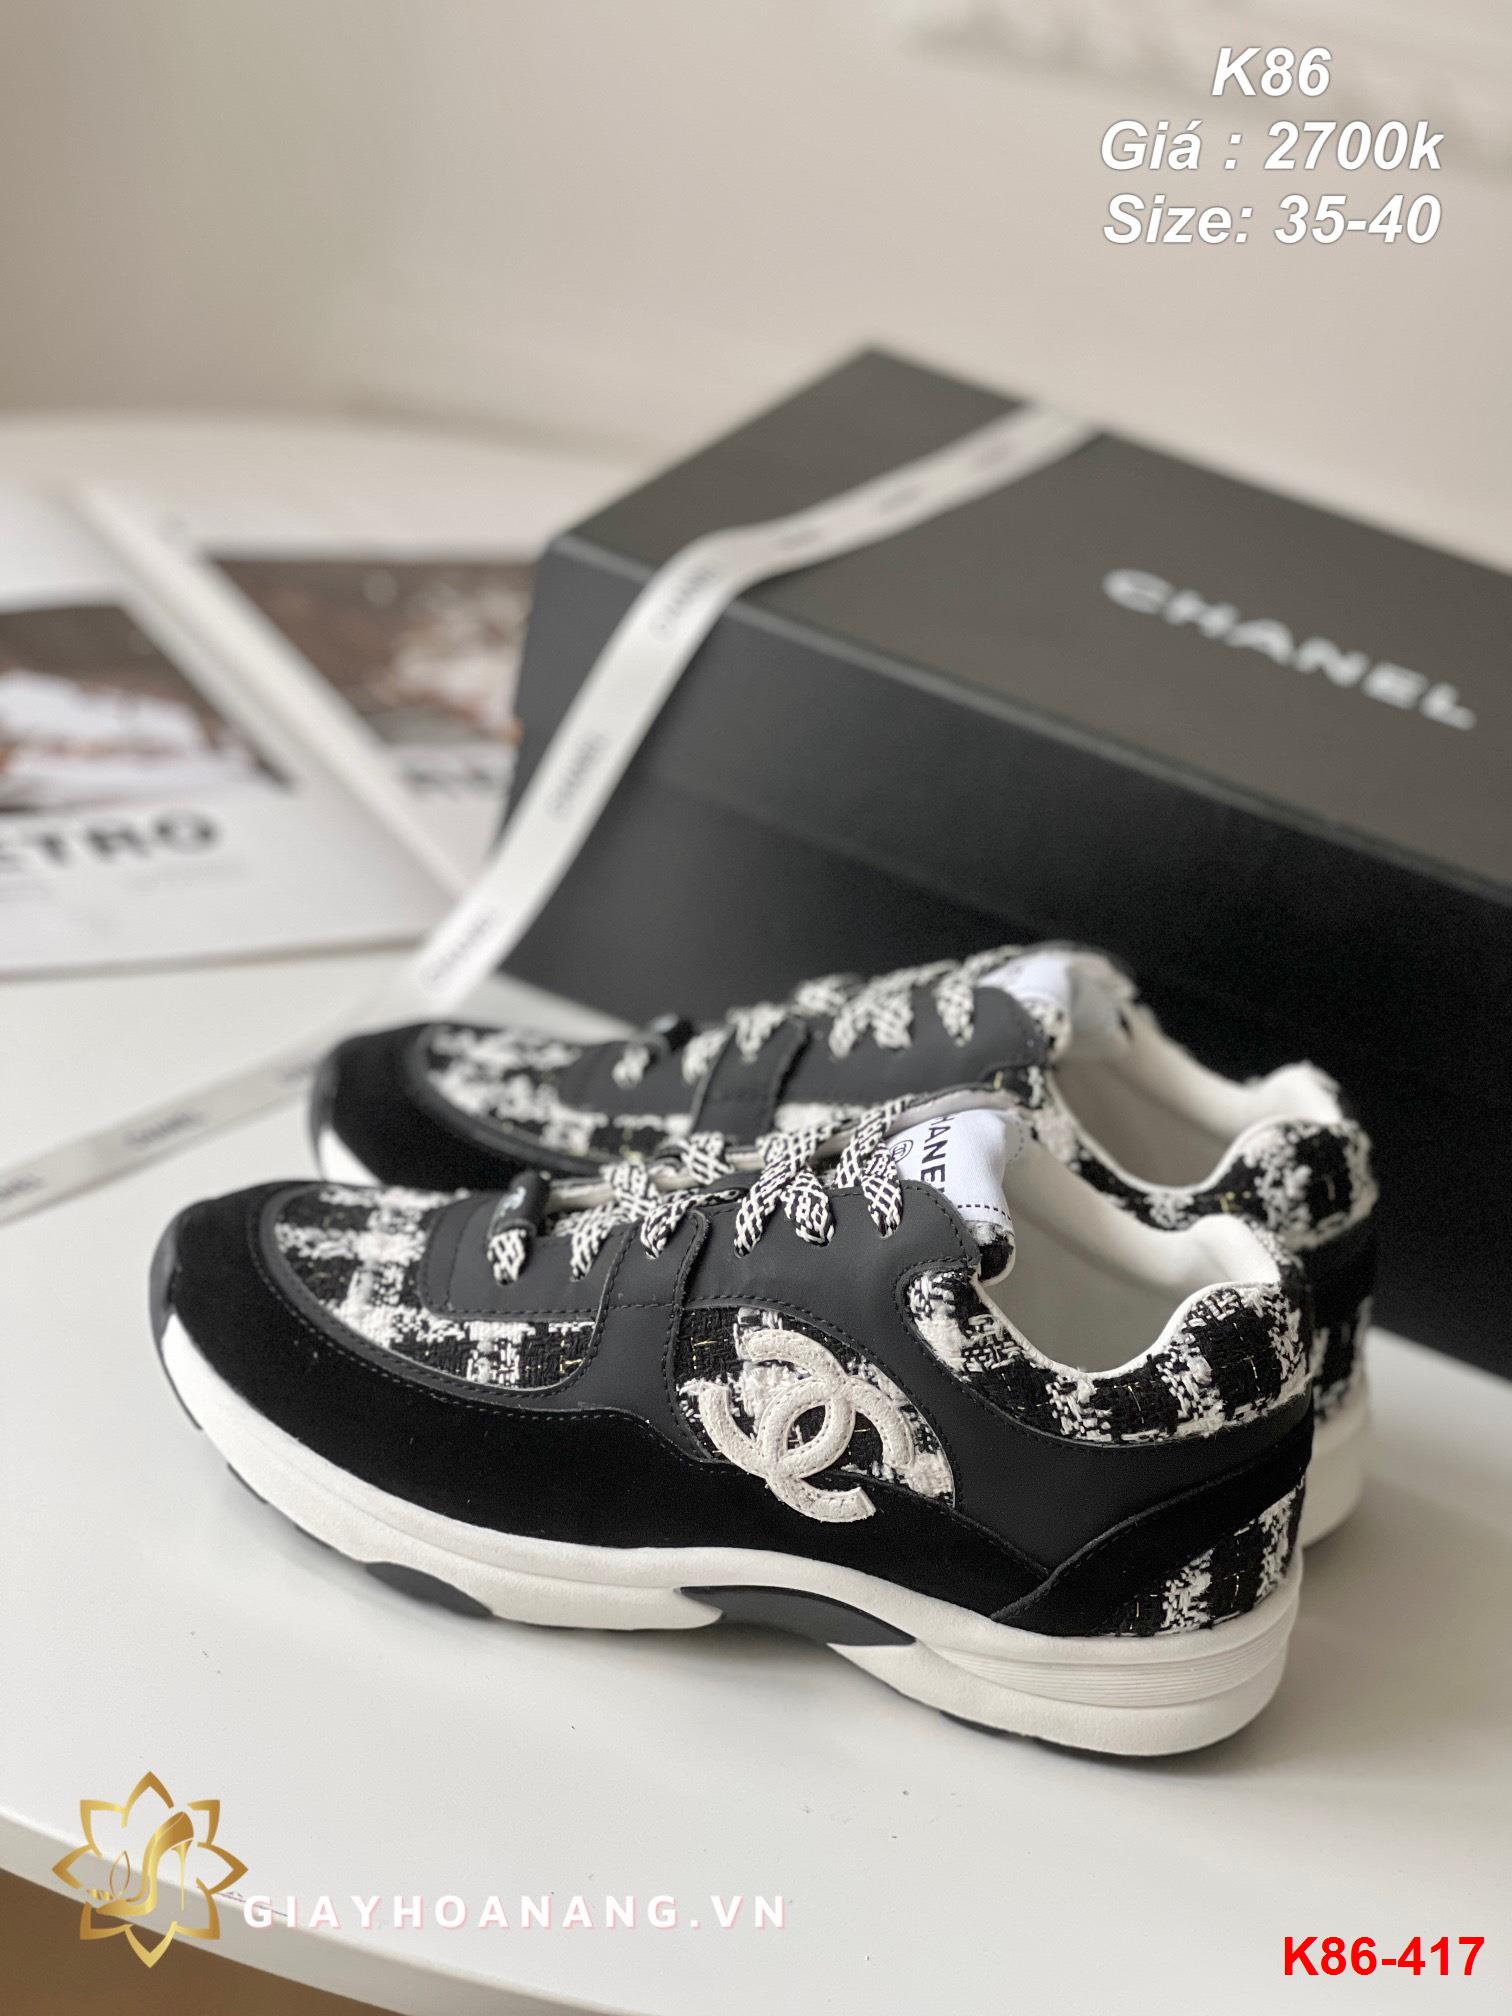 K86-417 Chanel giày thể thao siêu cấp